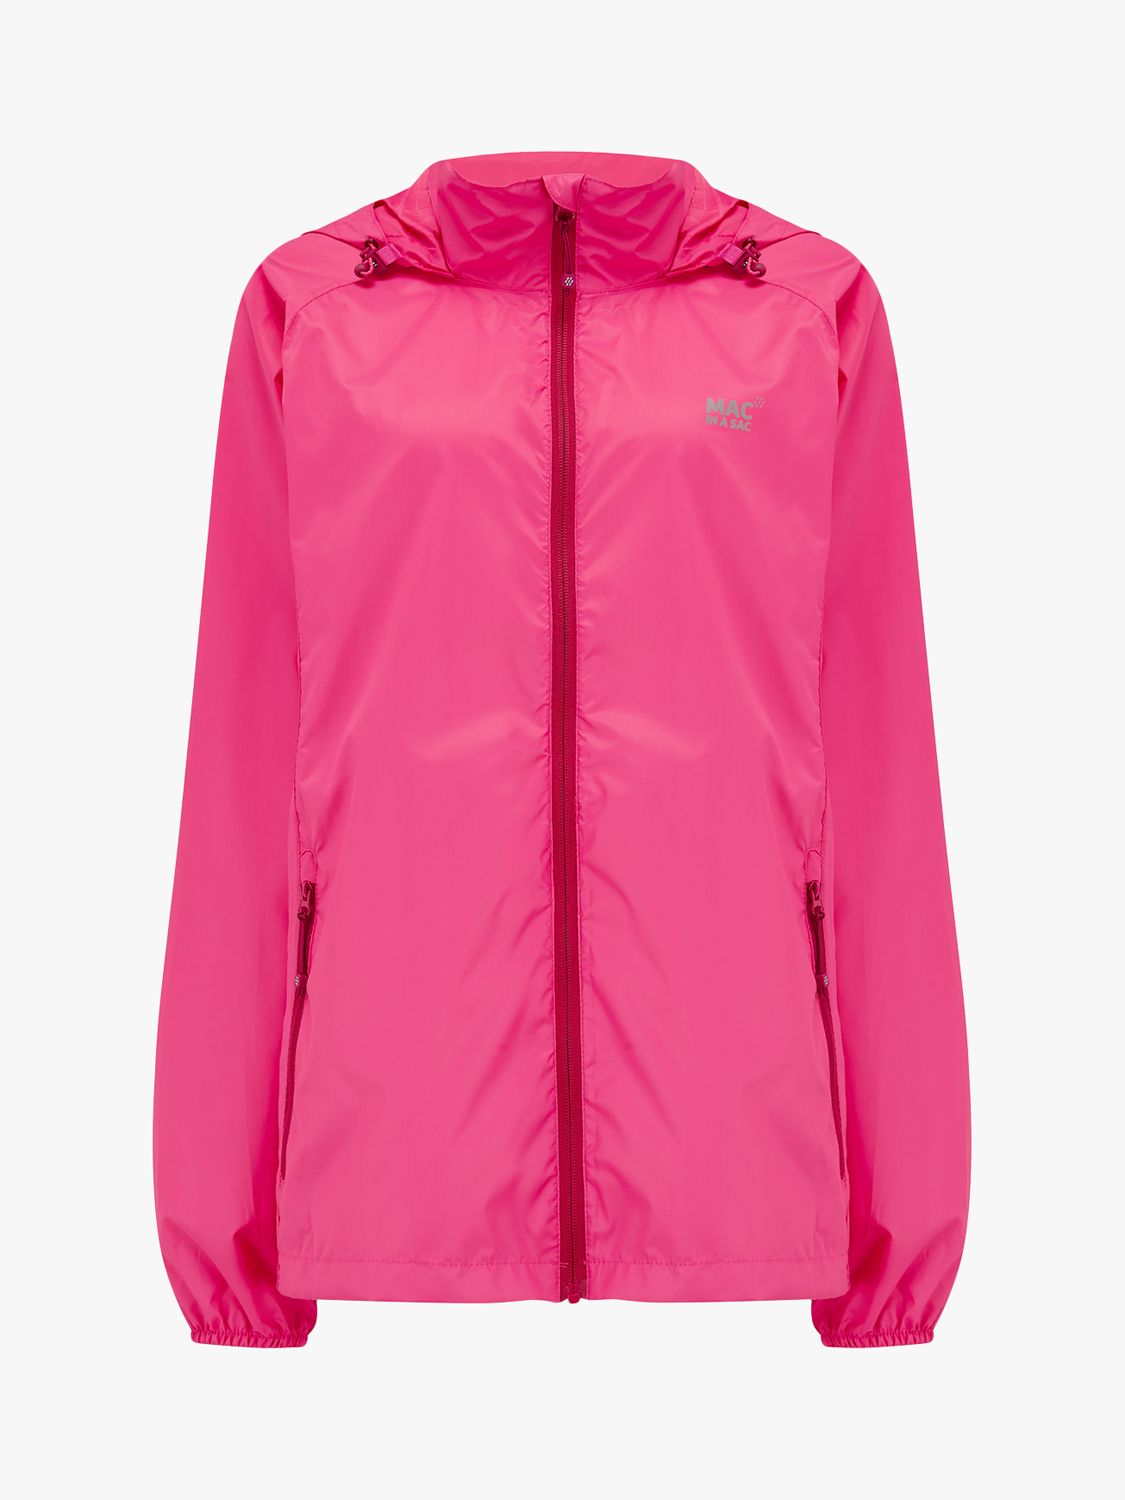 Mac In A Sac Origin II Unisex Packable Waterproof Jacket, Pink at